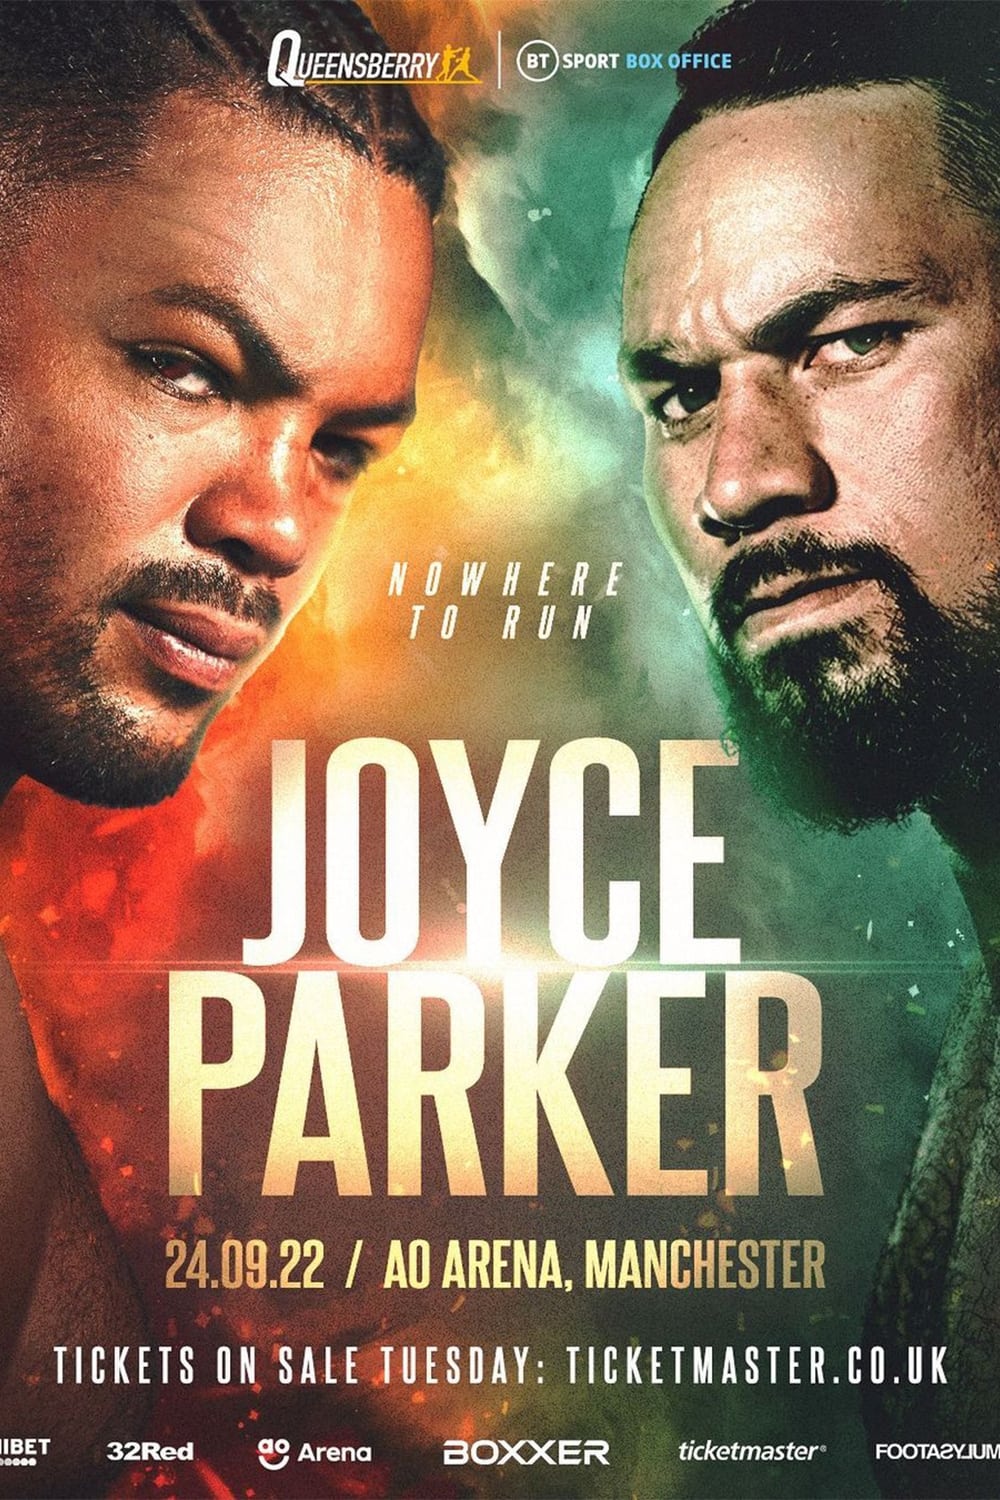 Joe Joyce vs. Joseph Parker